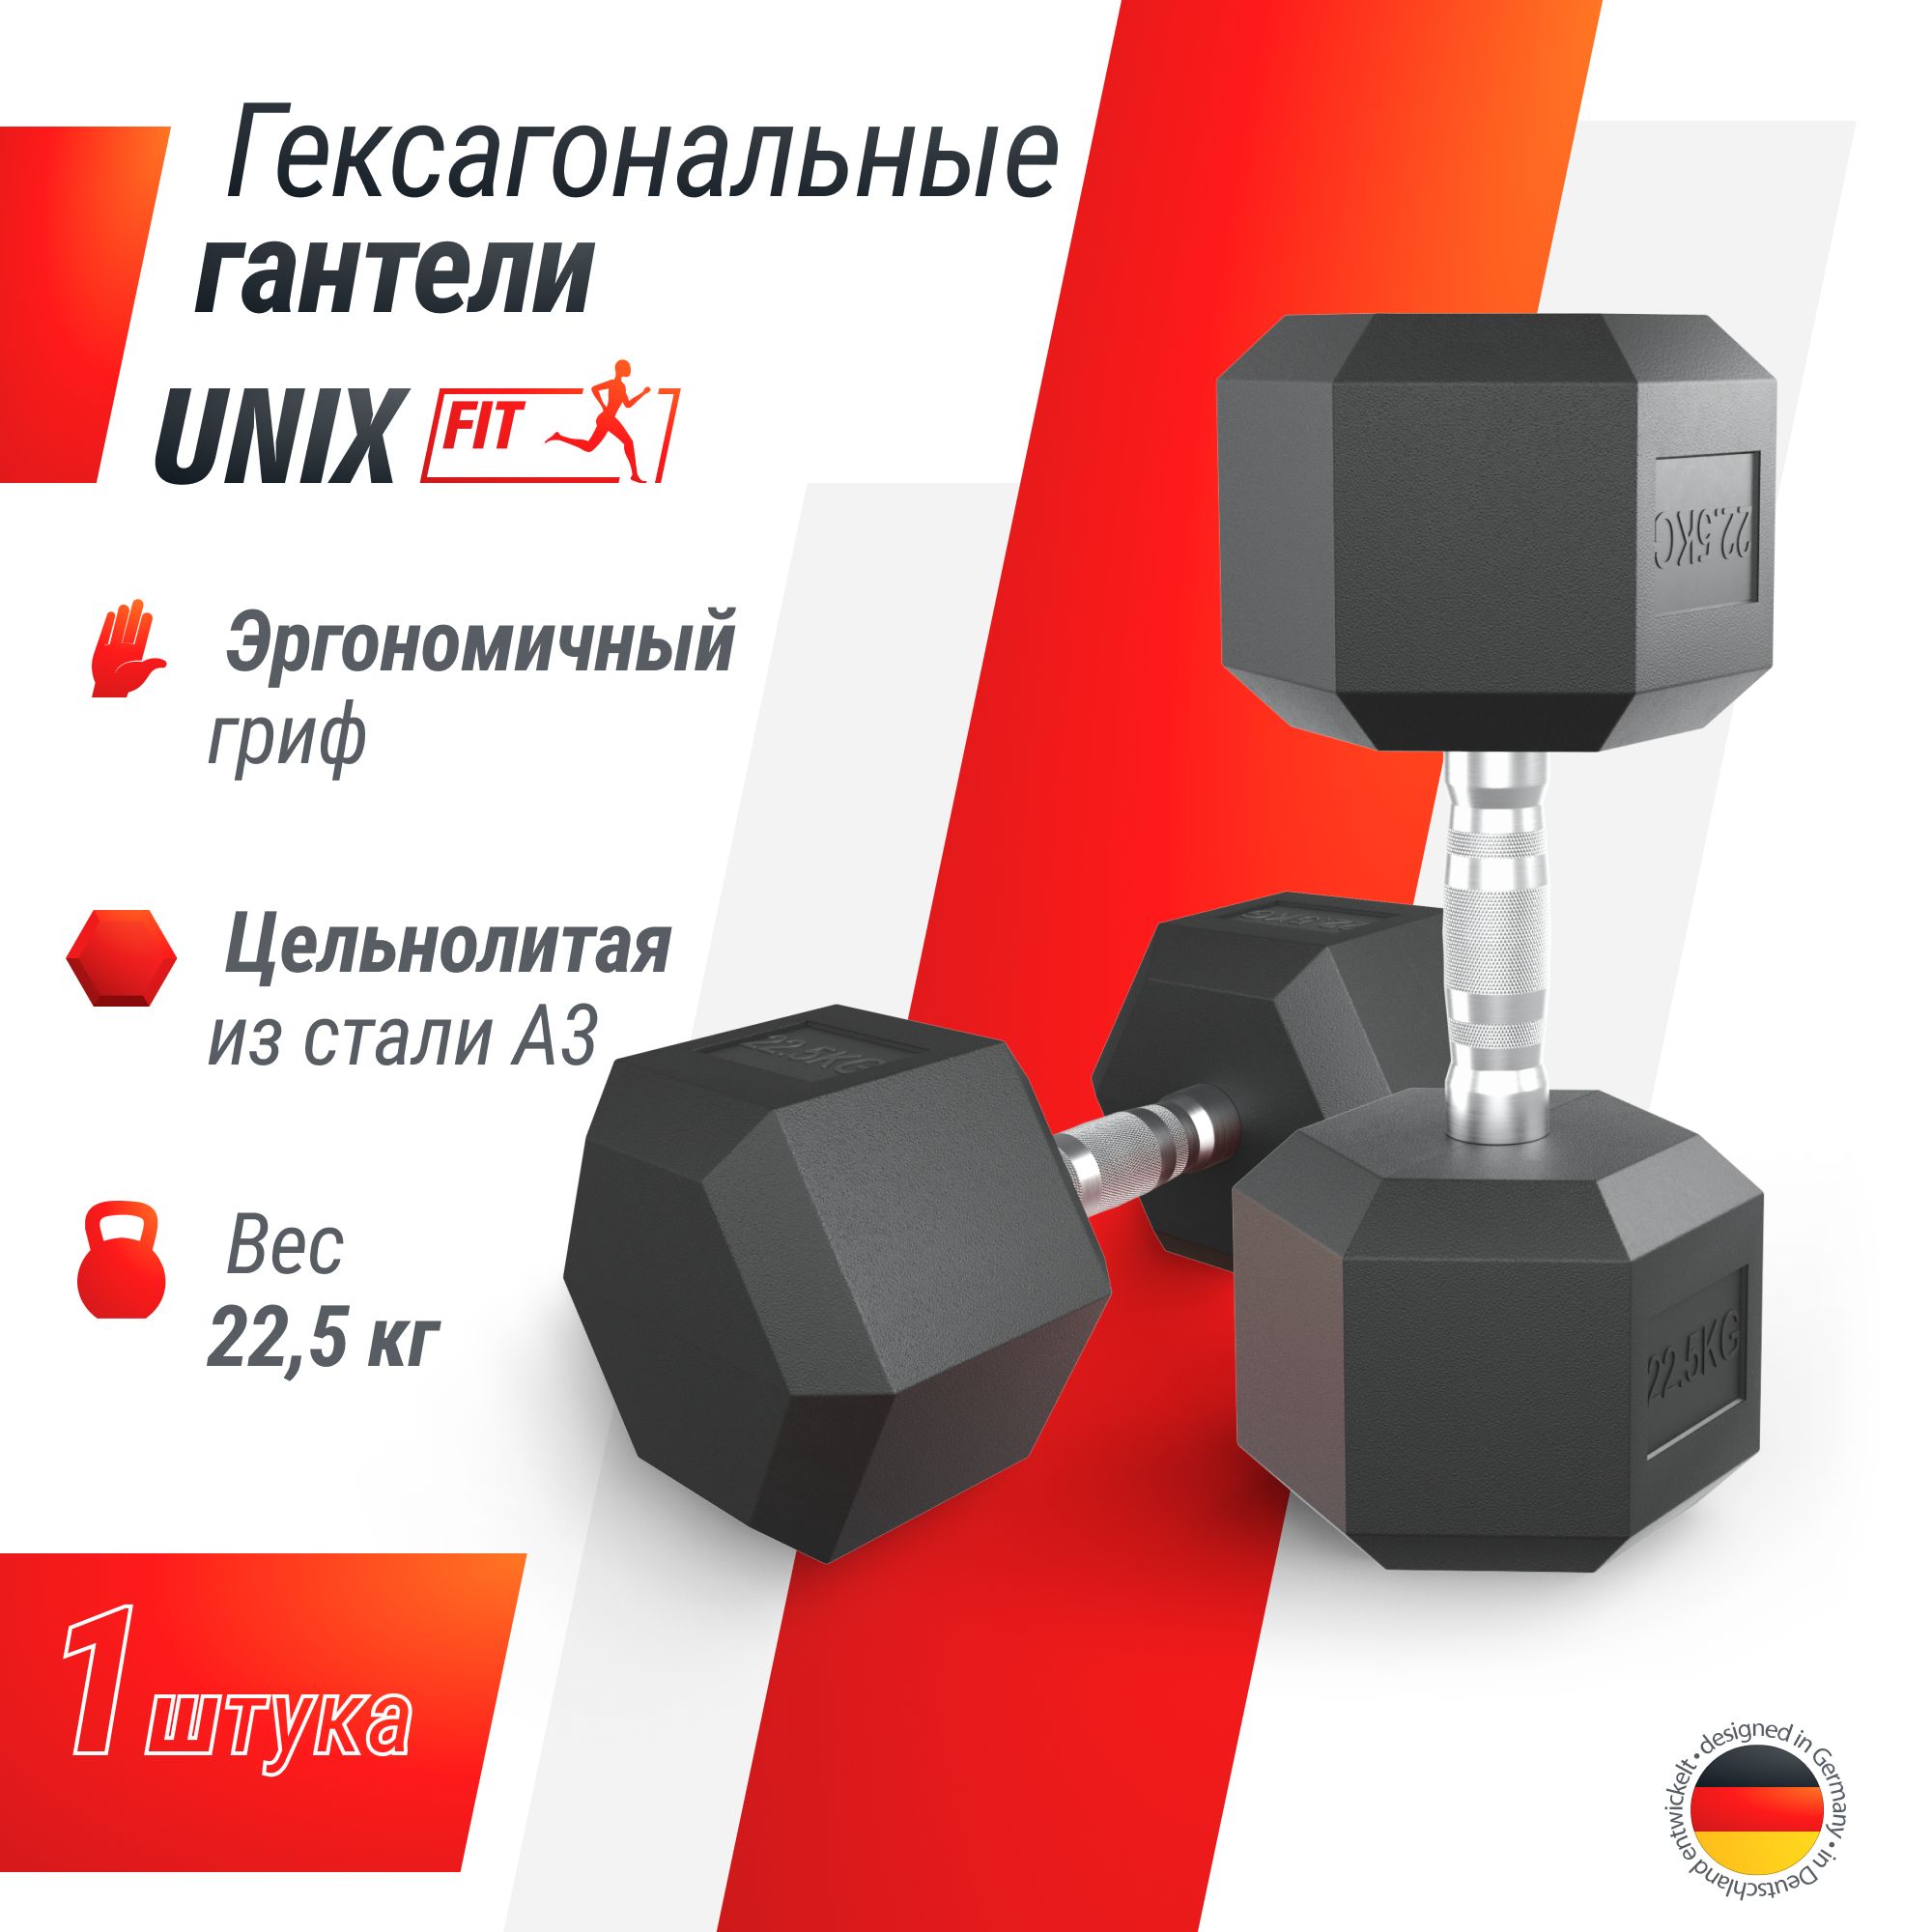 Гантель гексагональная UNIX Fit обрезиненная 22,5 кг шт